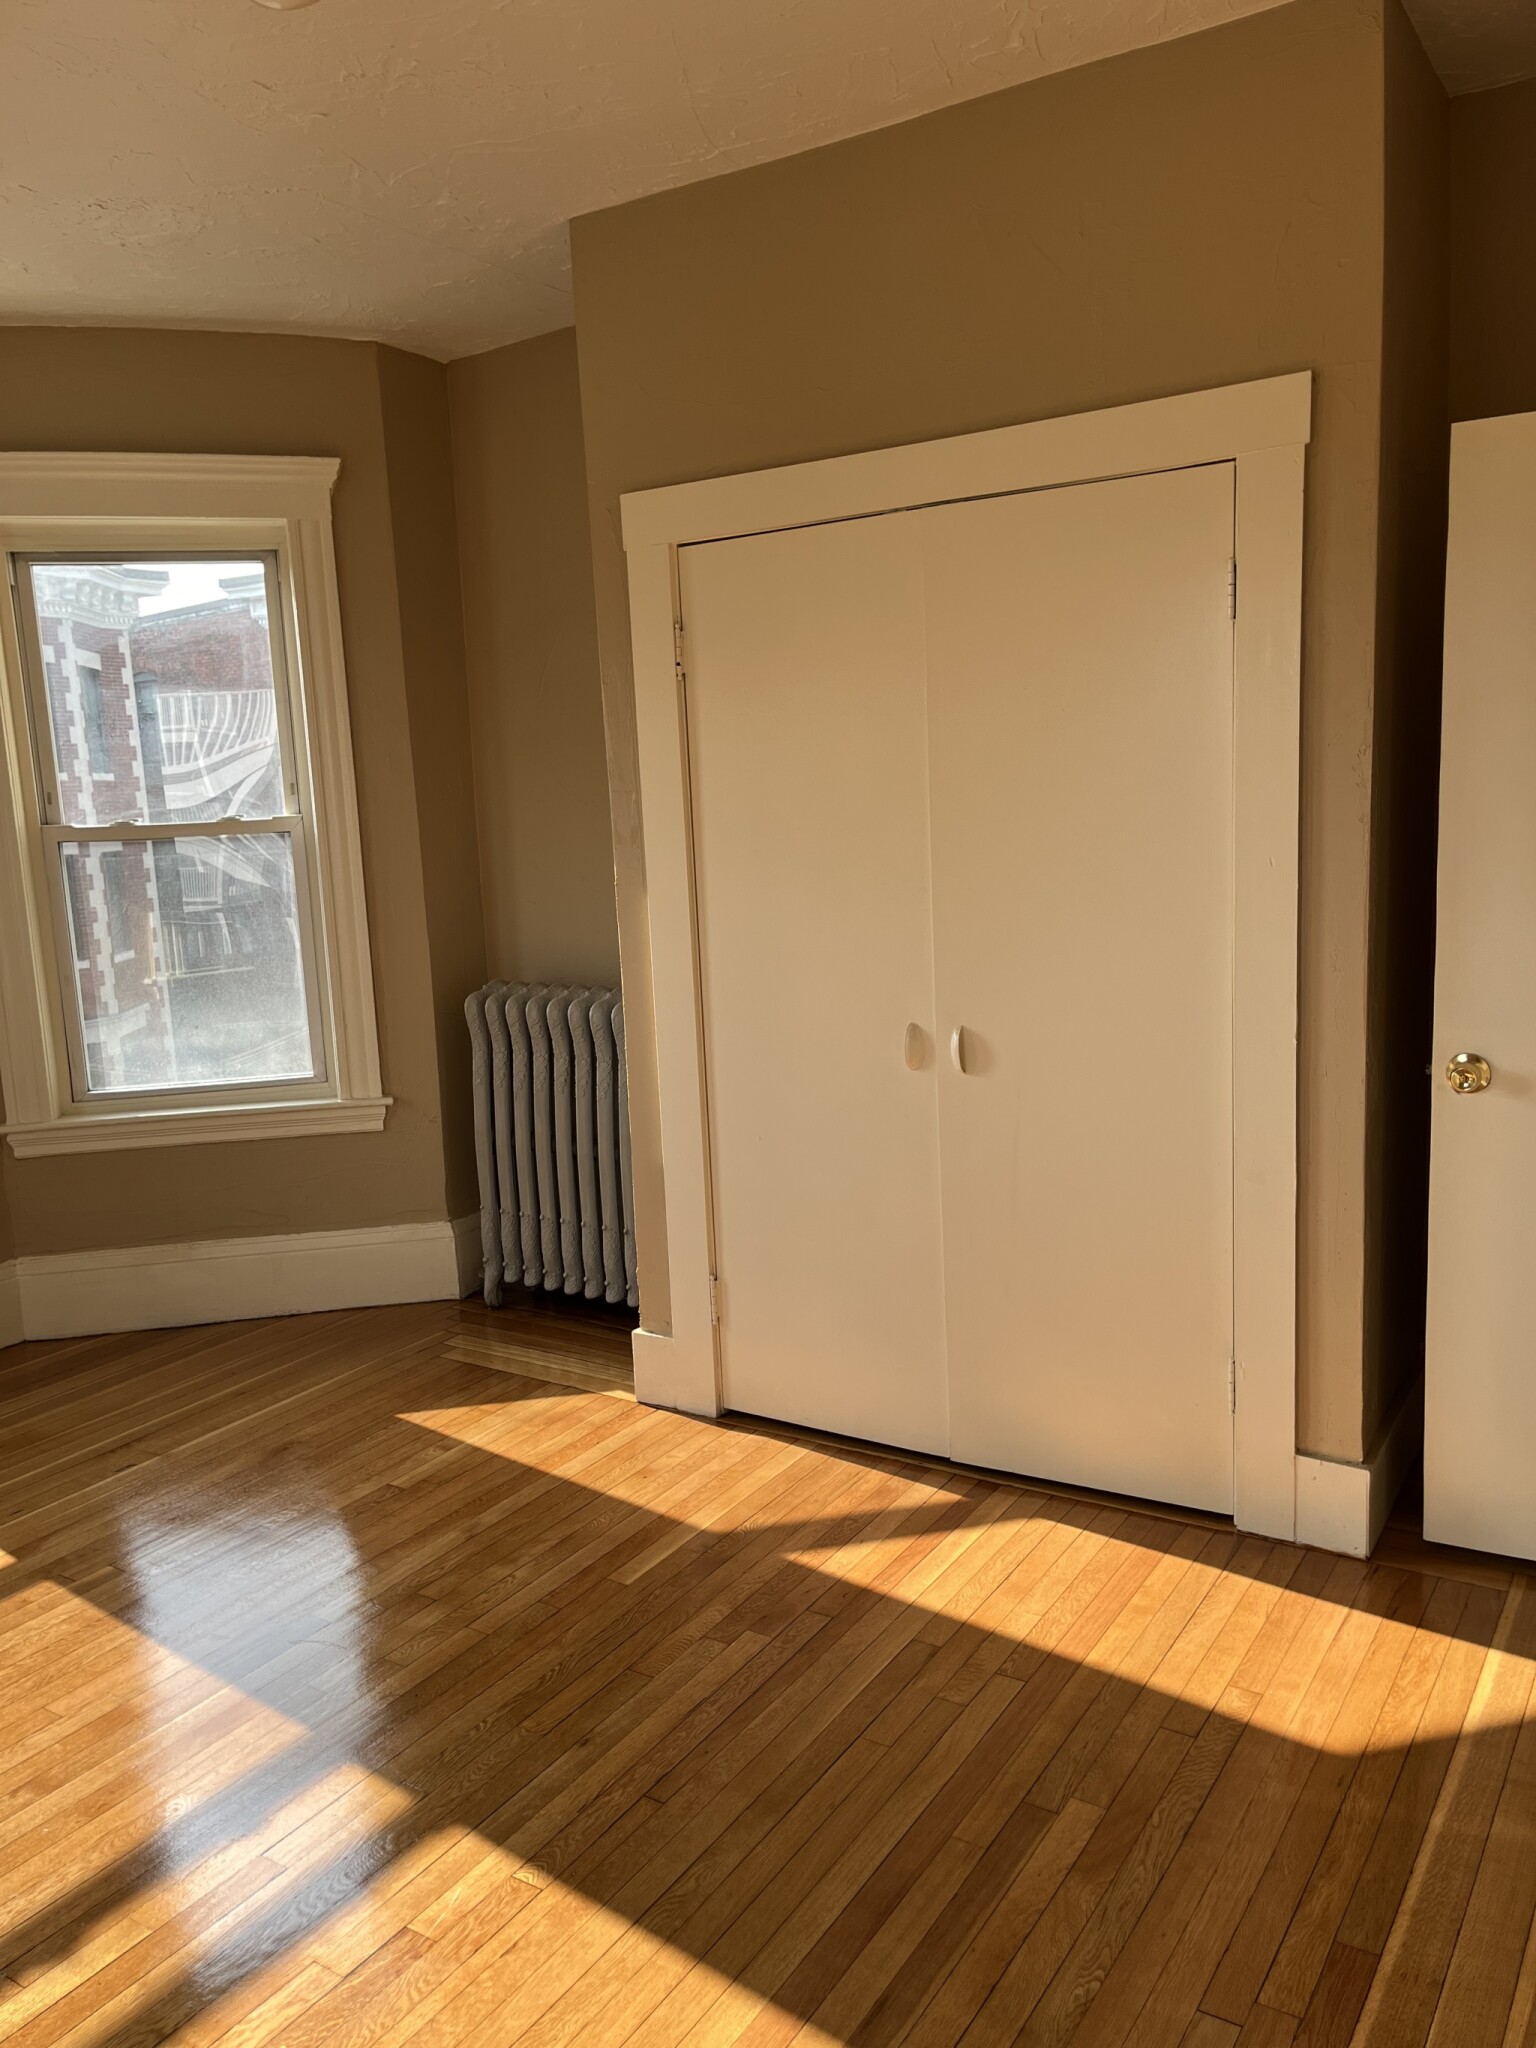 Photos of apartment on Georgia,Boston MA 02121